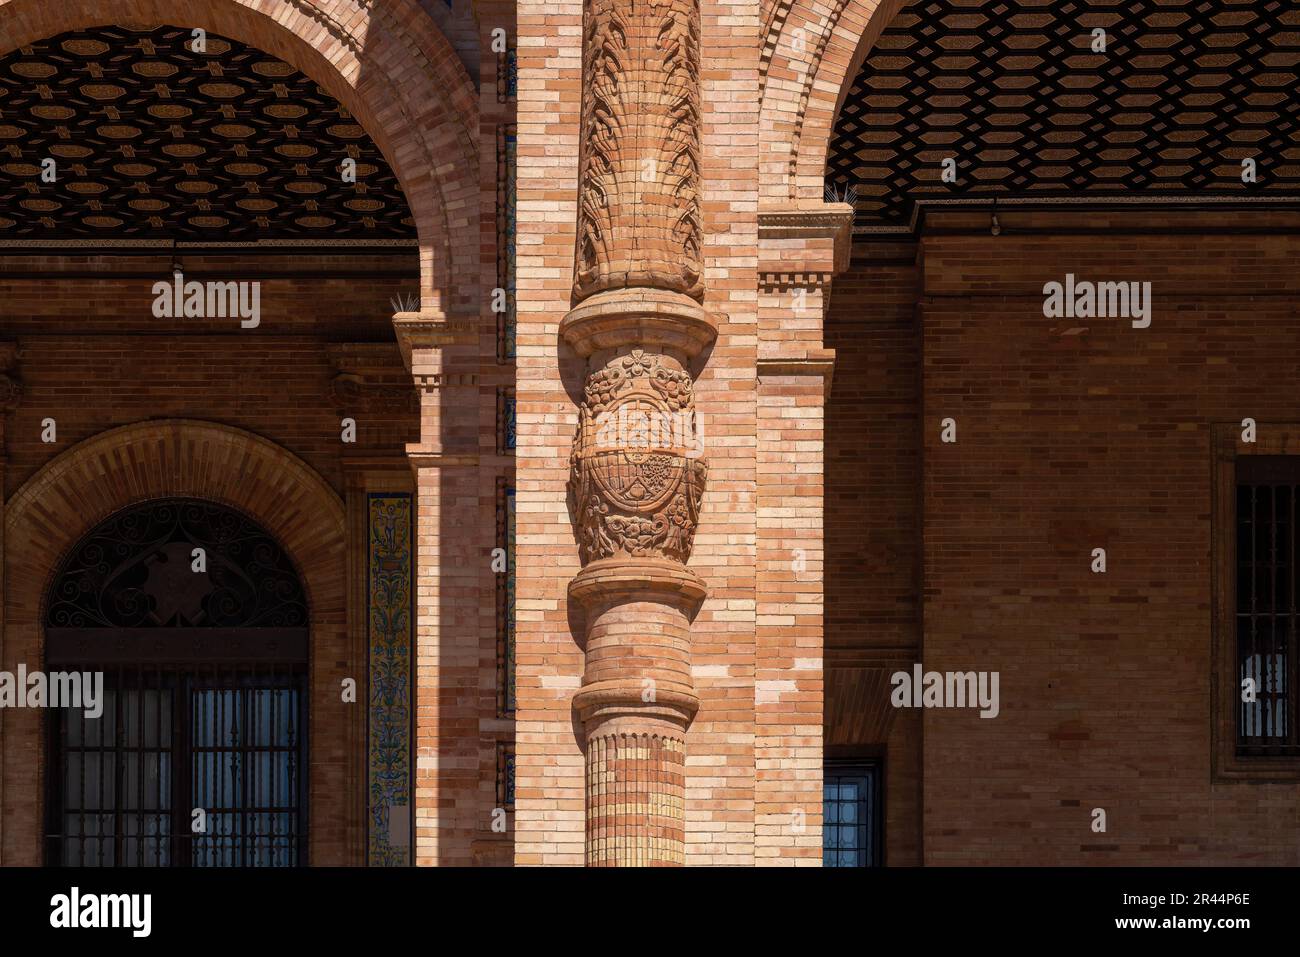 Geschnitzte Säule mit Wappen Spaniens - Sevilla, Andalusien, Spanien Stockfoto